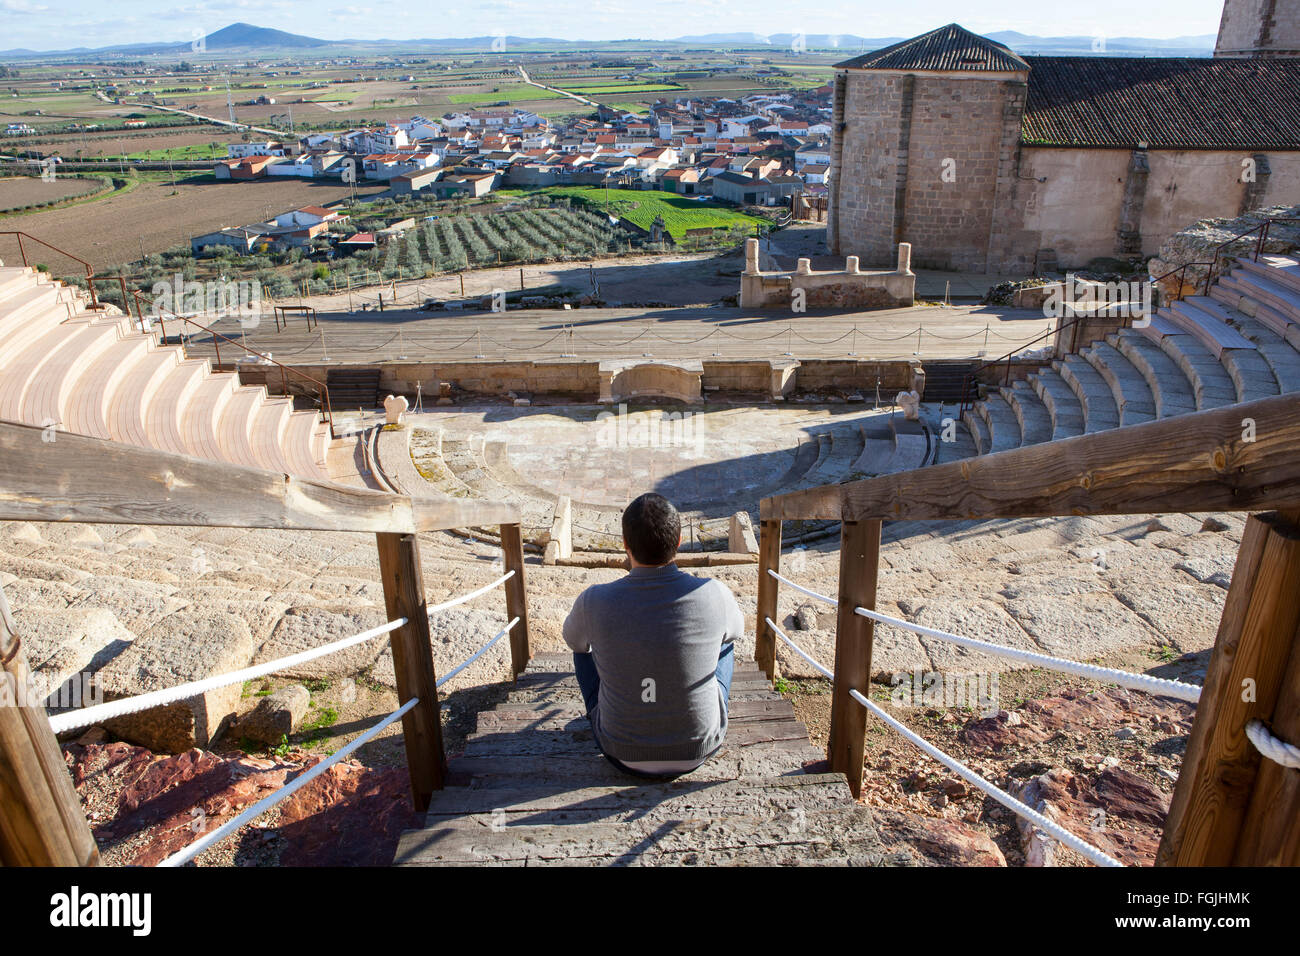 Turisti in visita al teatro romano di Medellin, Spagna. Egli è seduto sul grandstand godendo di una magnifica vista Foto Stock